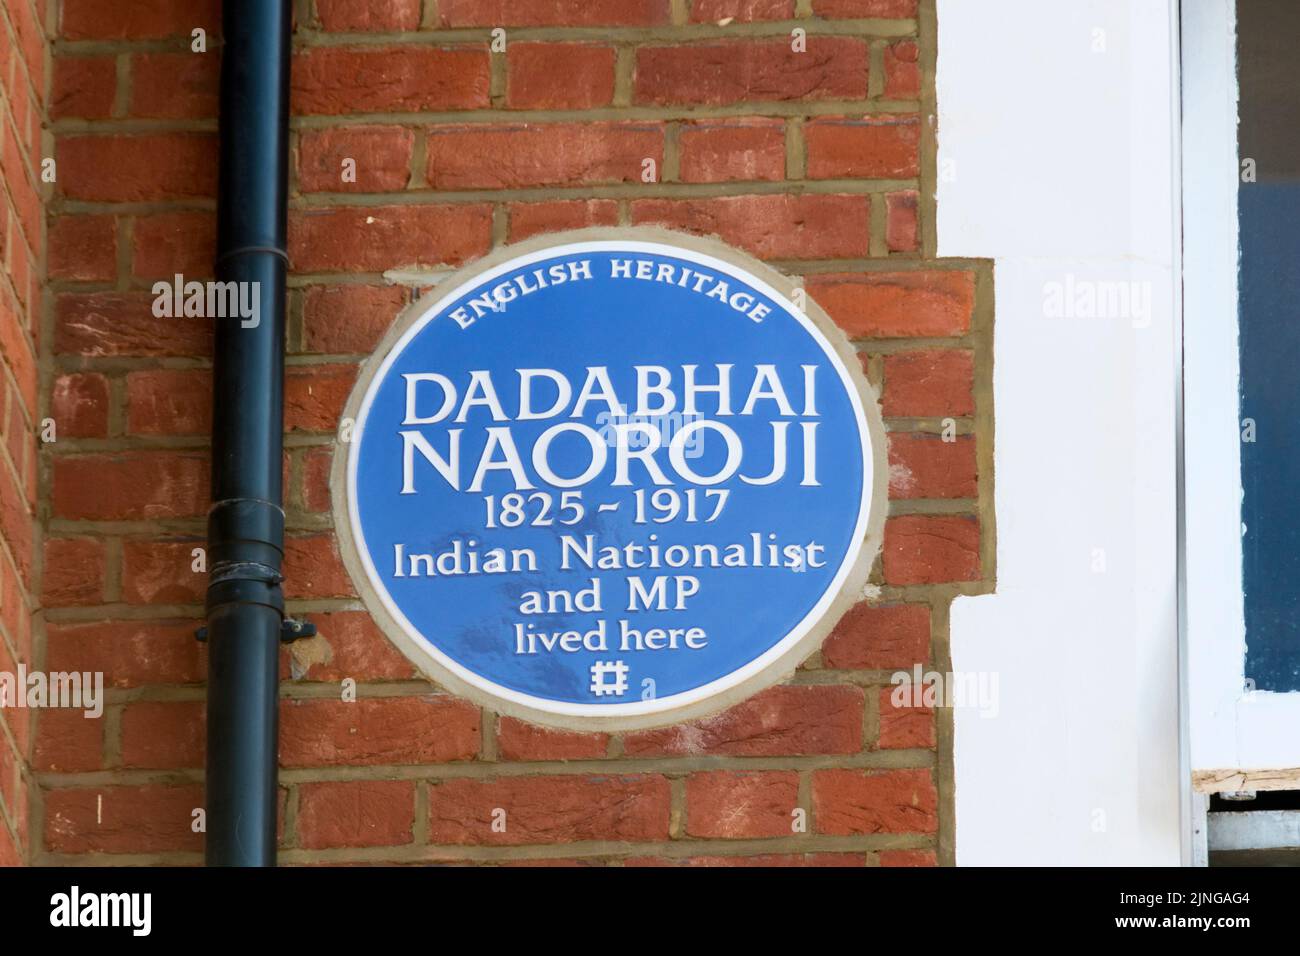 Une plaque bleue à Anerley Park, Bromley, en hommage au député britannique et nationaliste indien Dadabhai Naoroji datant du 19th siècle. Banque D'Images